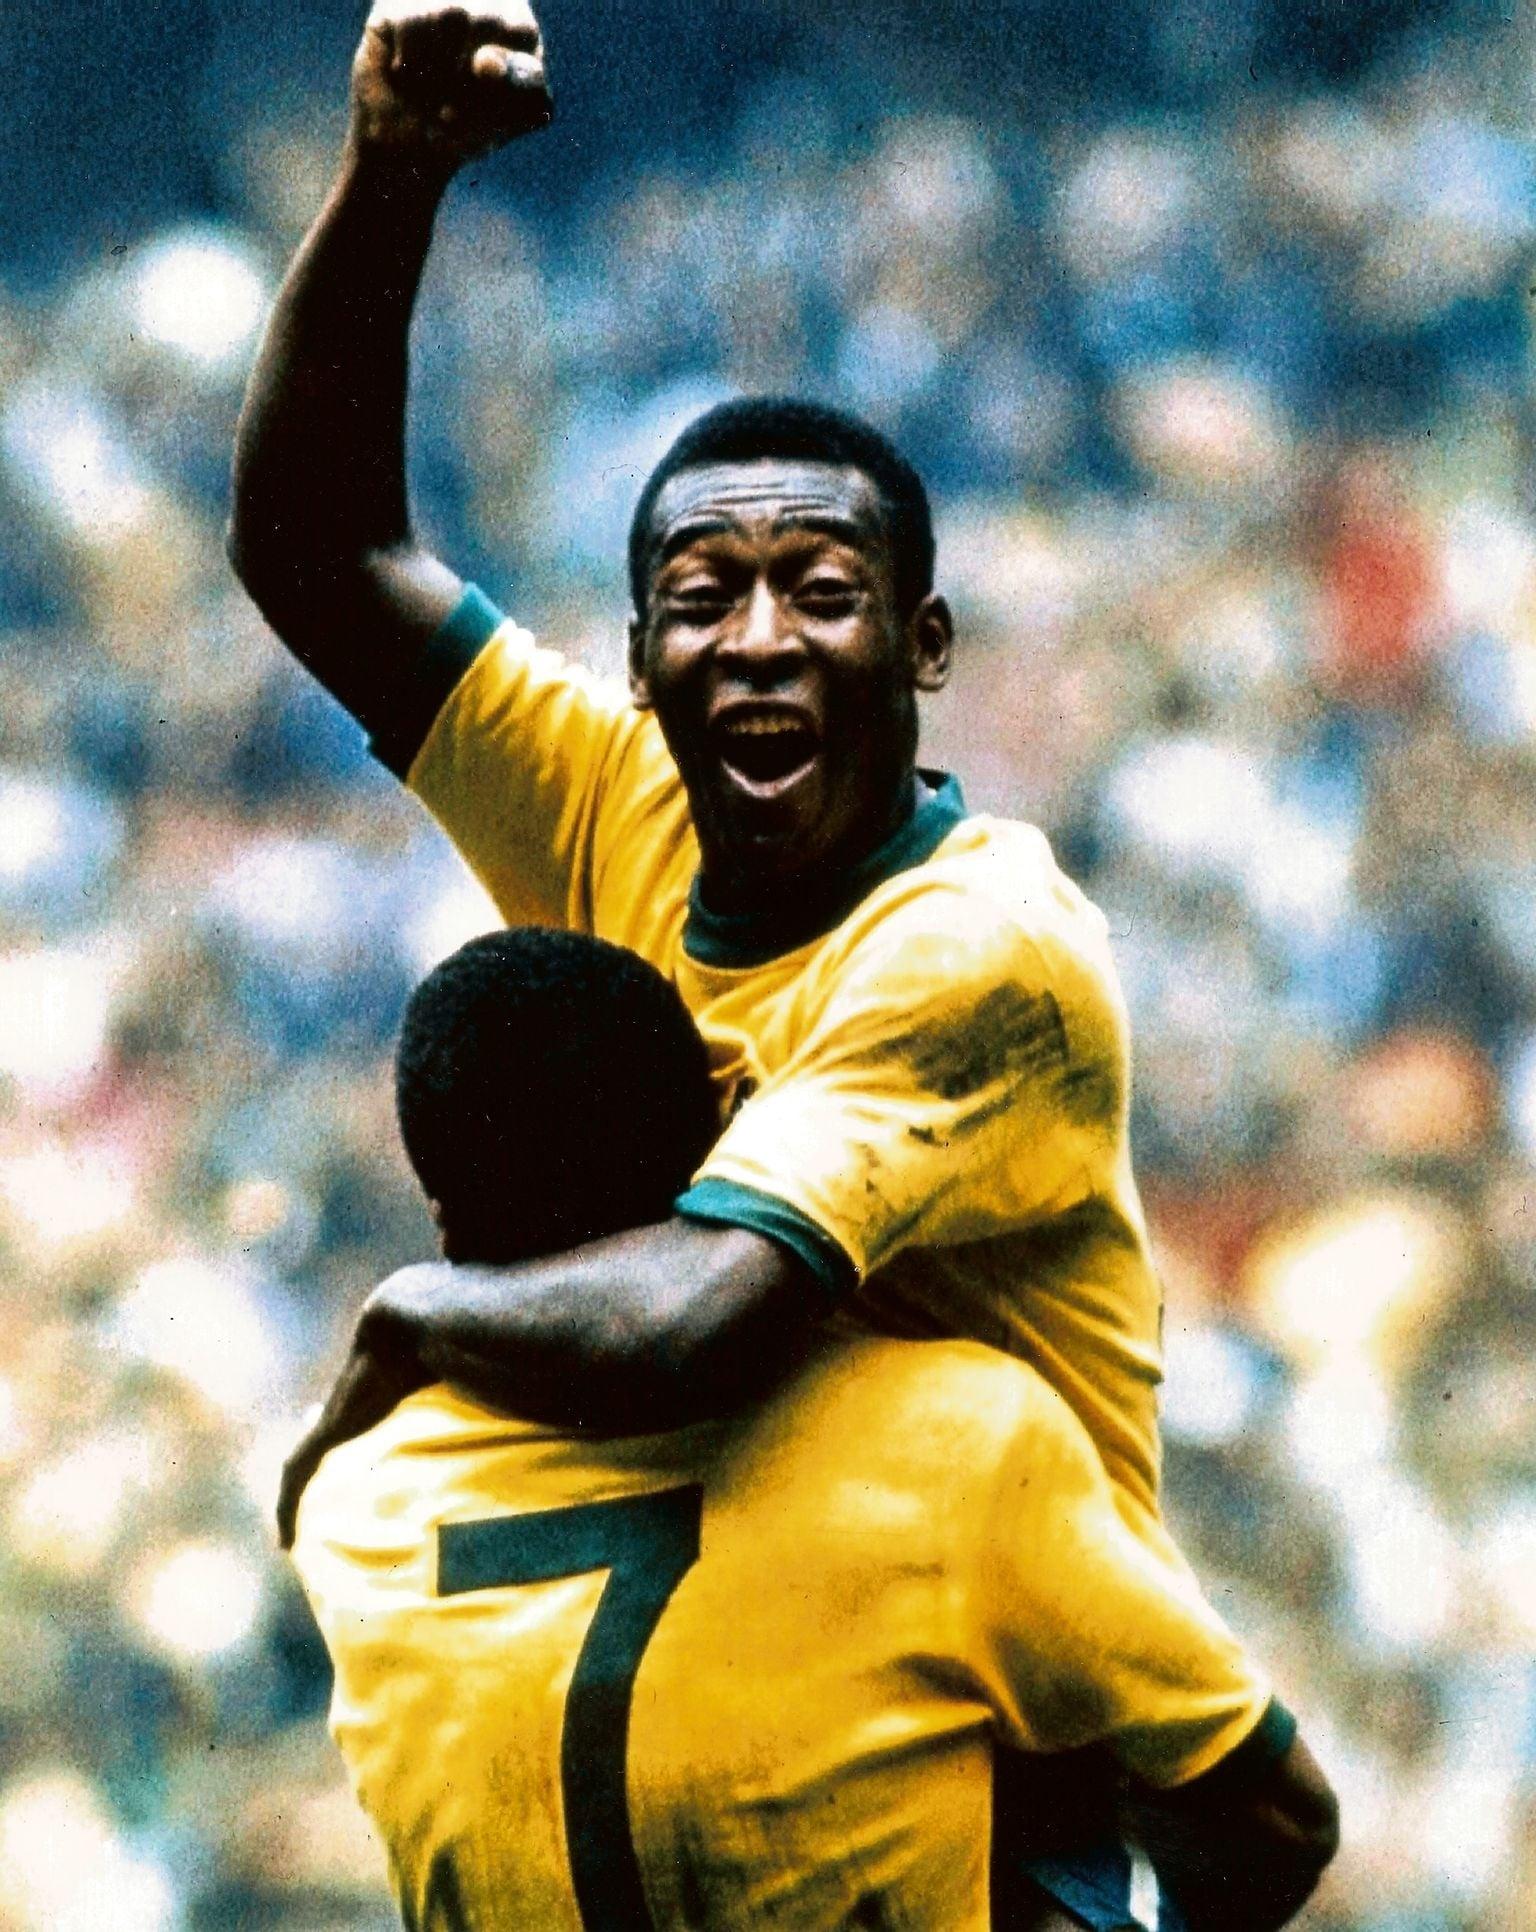 Dez motivos que fizeram Pelé se tornar o Rei do Futebol